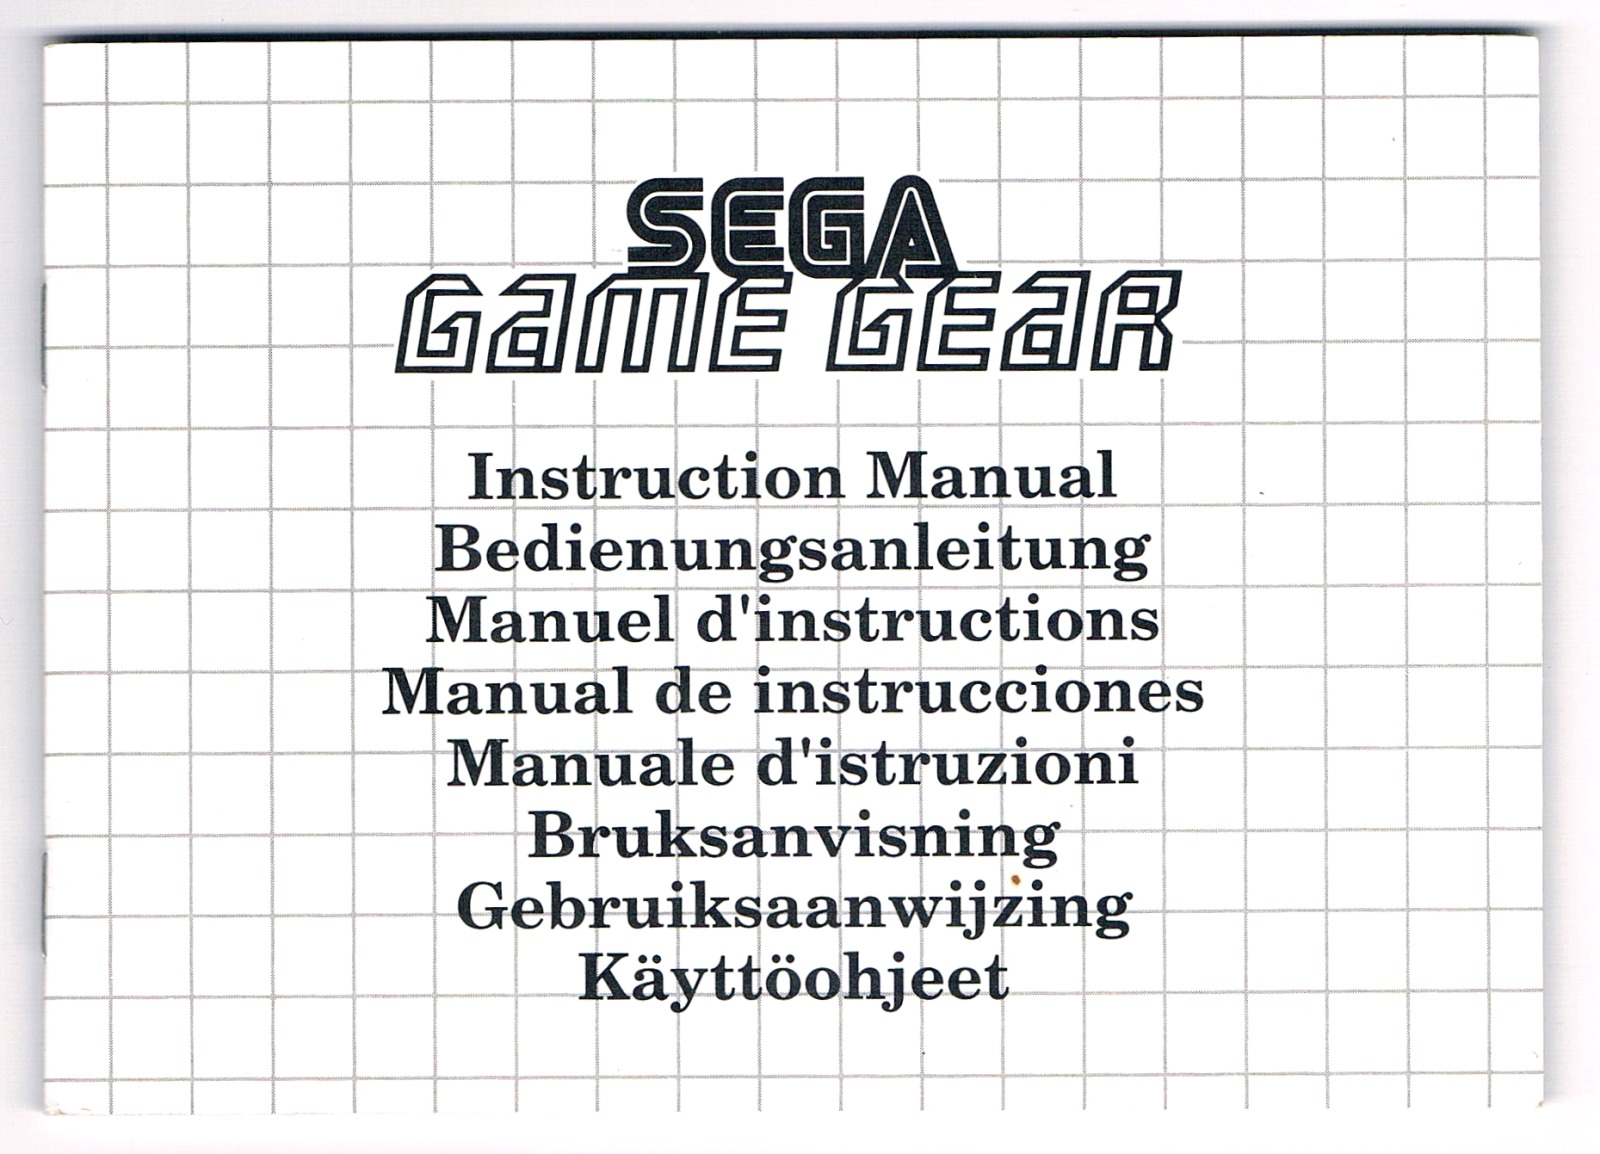 Sega Game Gear - Bedienungsanleitung